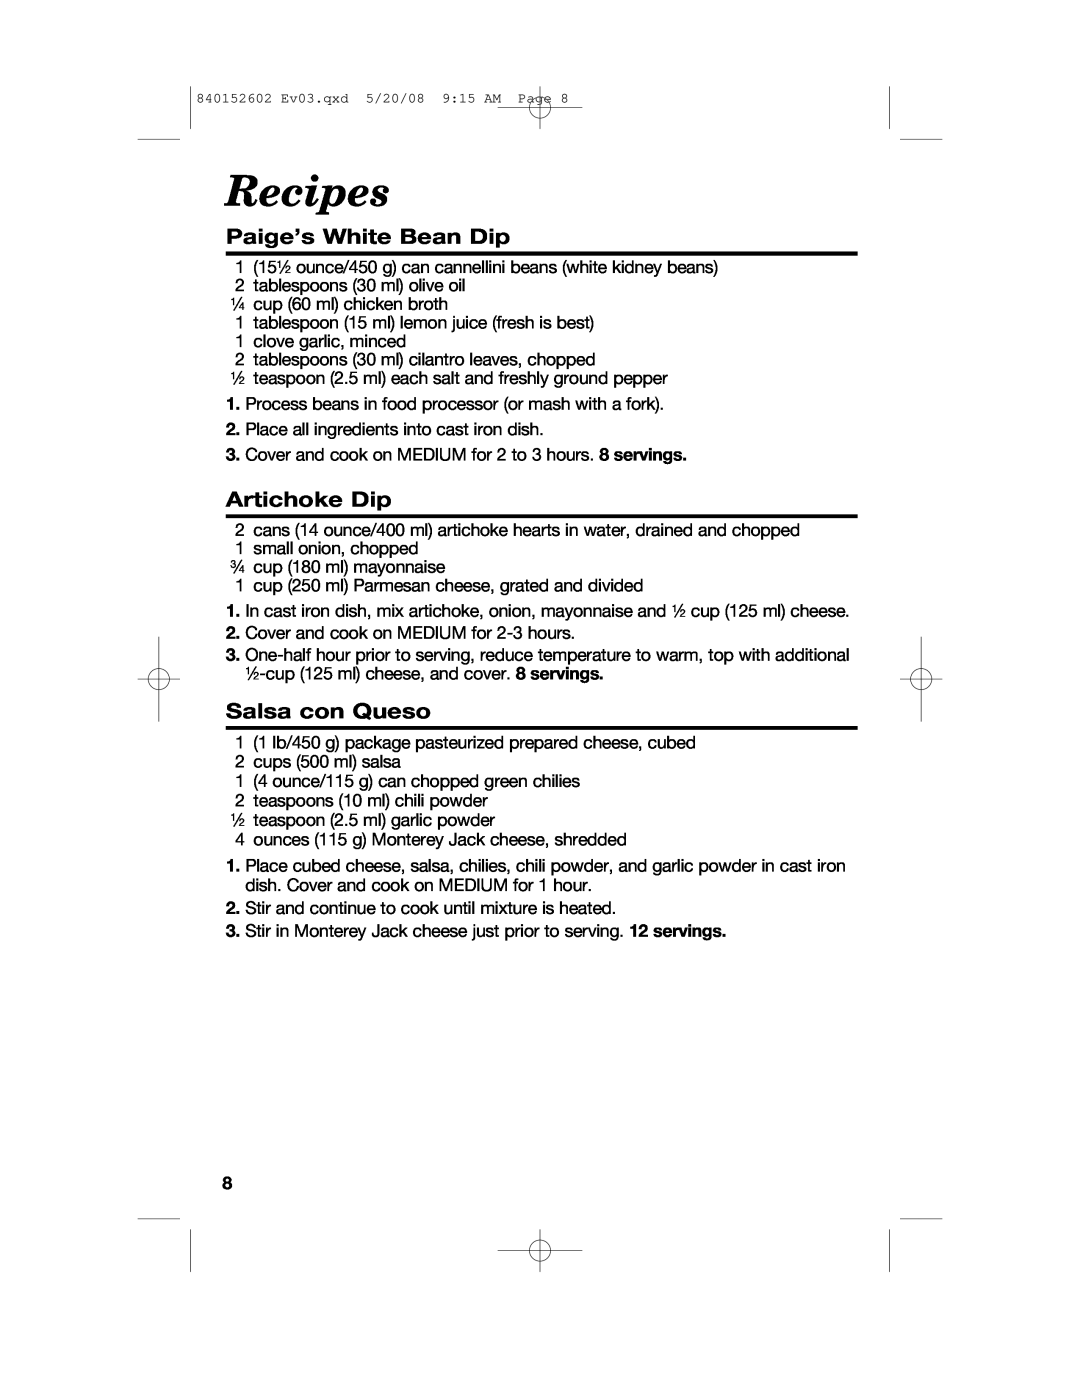 Hamilton Beach 840152602 manual Recipes, Paige’s White Bean Dip, Artichoke Dip, Salsa con Queso 